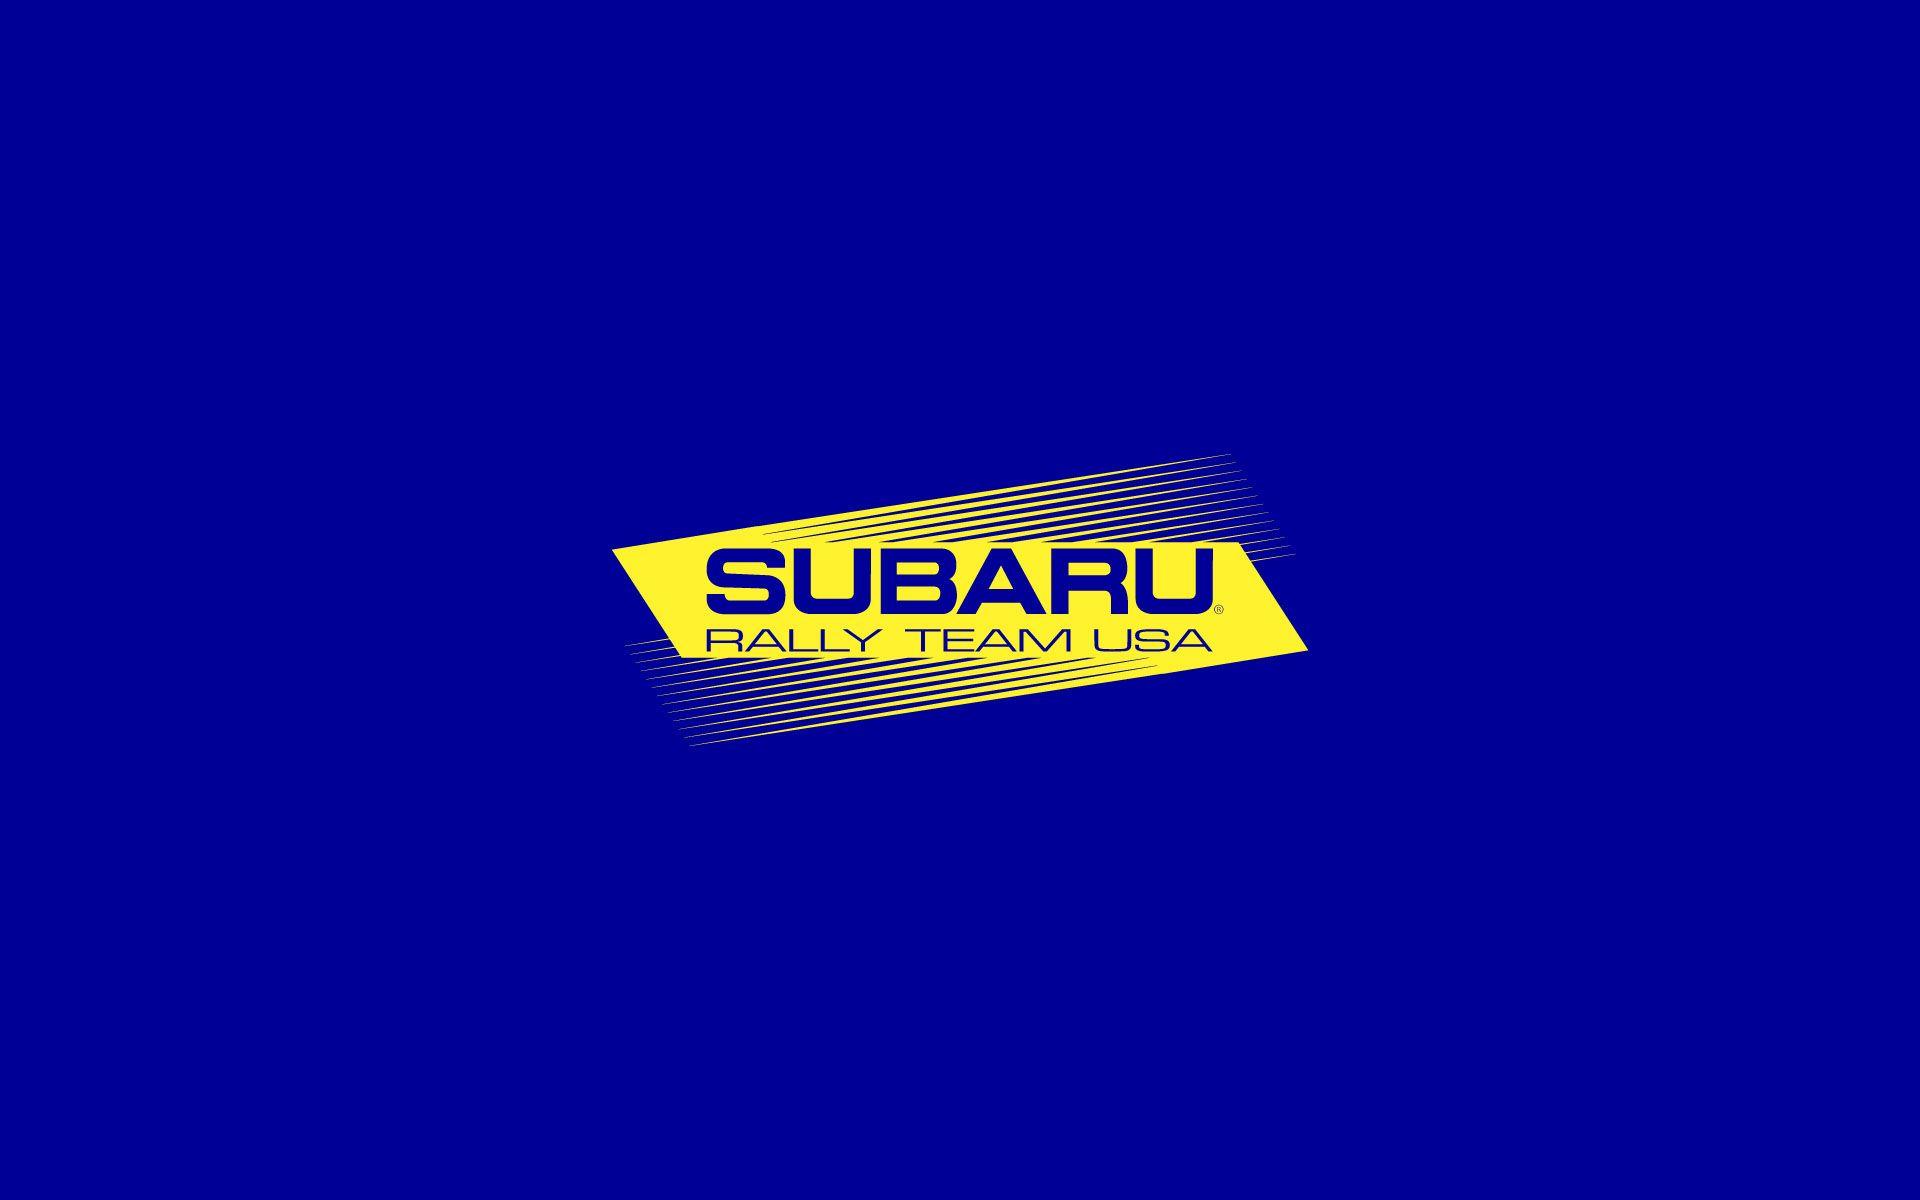 Subaru World Rally Team Logo - Subaru Rally Team USA – ESBG Design